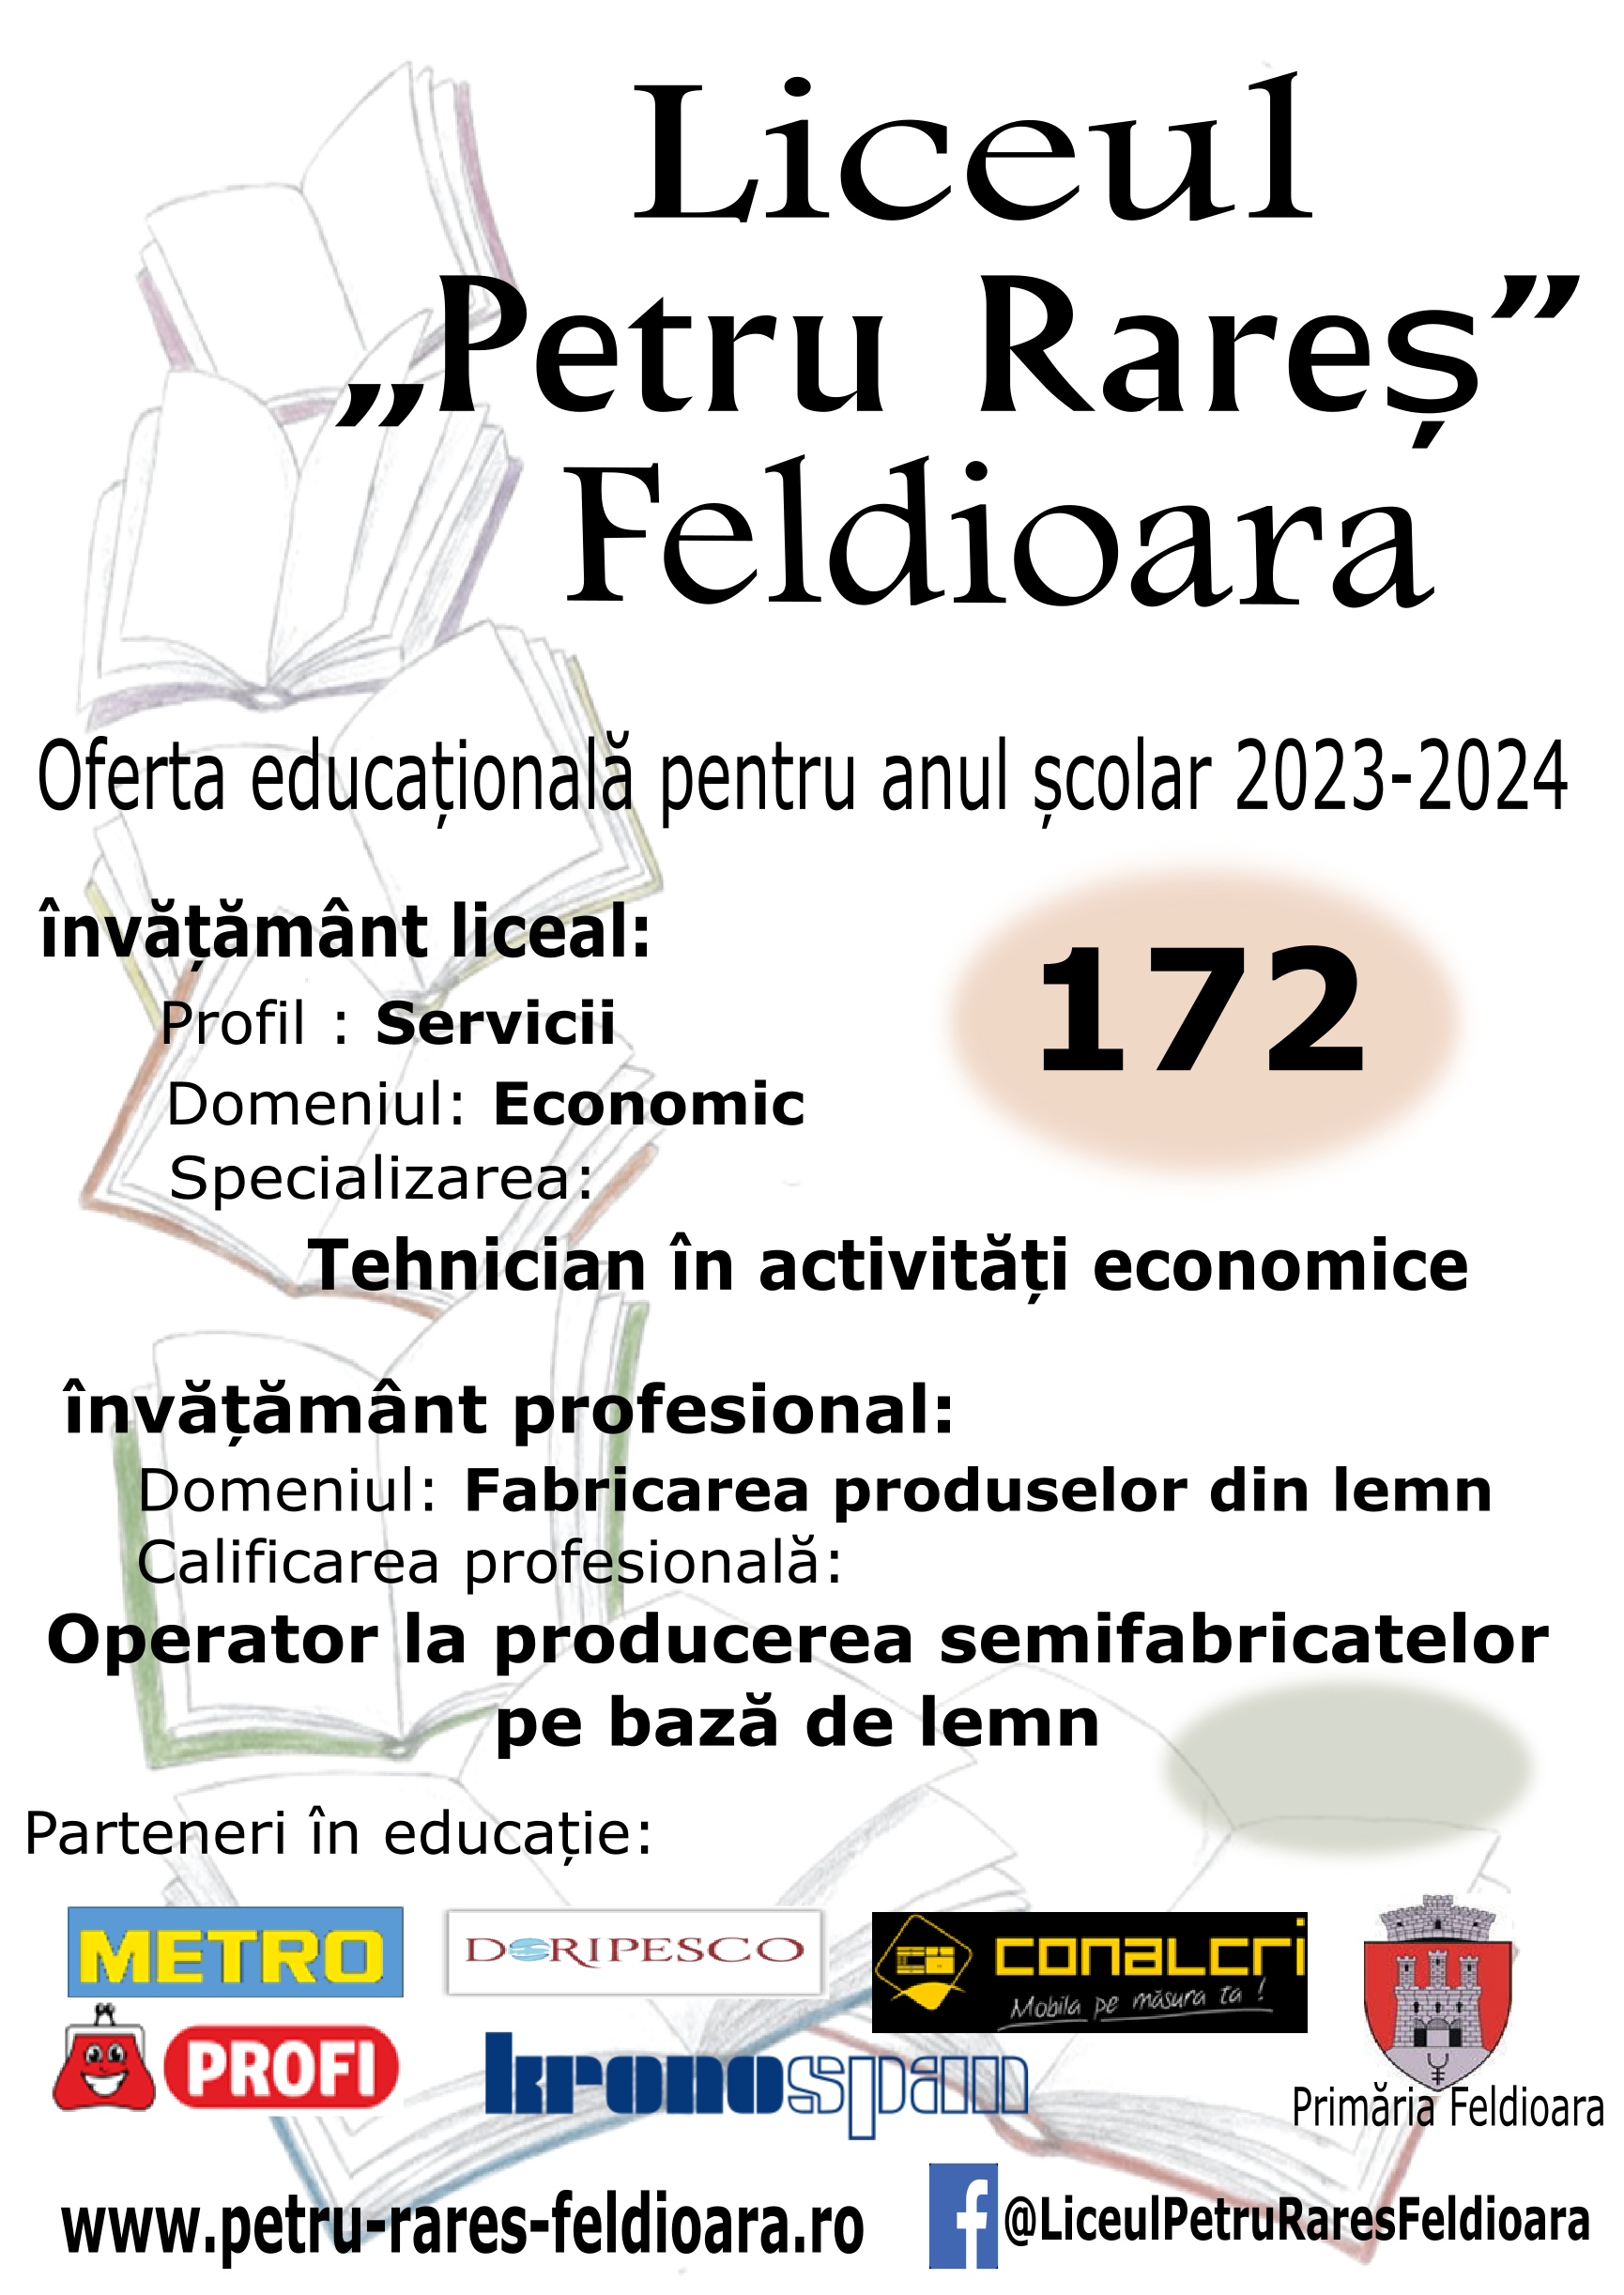 Oferta educațională 2023-2024